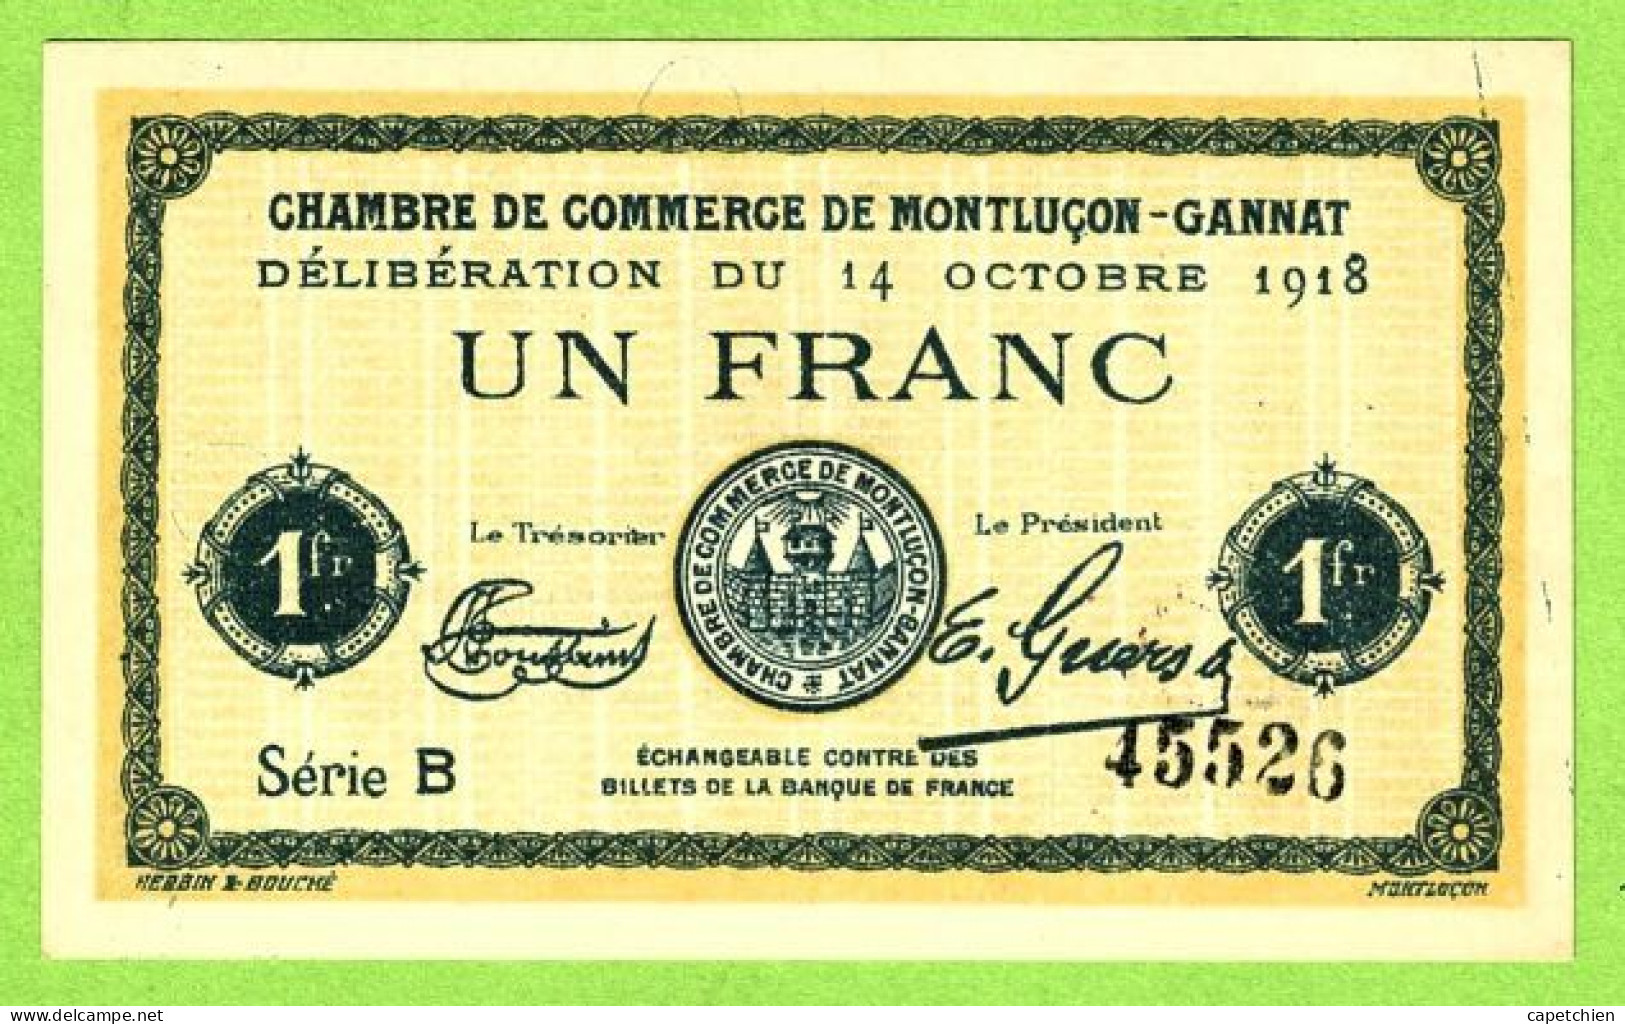 FRANCE / CHAMBRE De COMMERCE De MONTLUÇON - GANNAT / 1 FRANC/ 14 OCTOBRE 1918  N° 45526 / SERIE B / NEUF - Cámara De Comercio